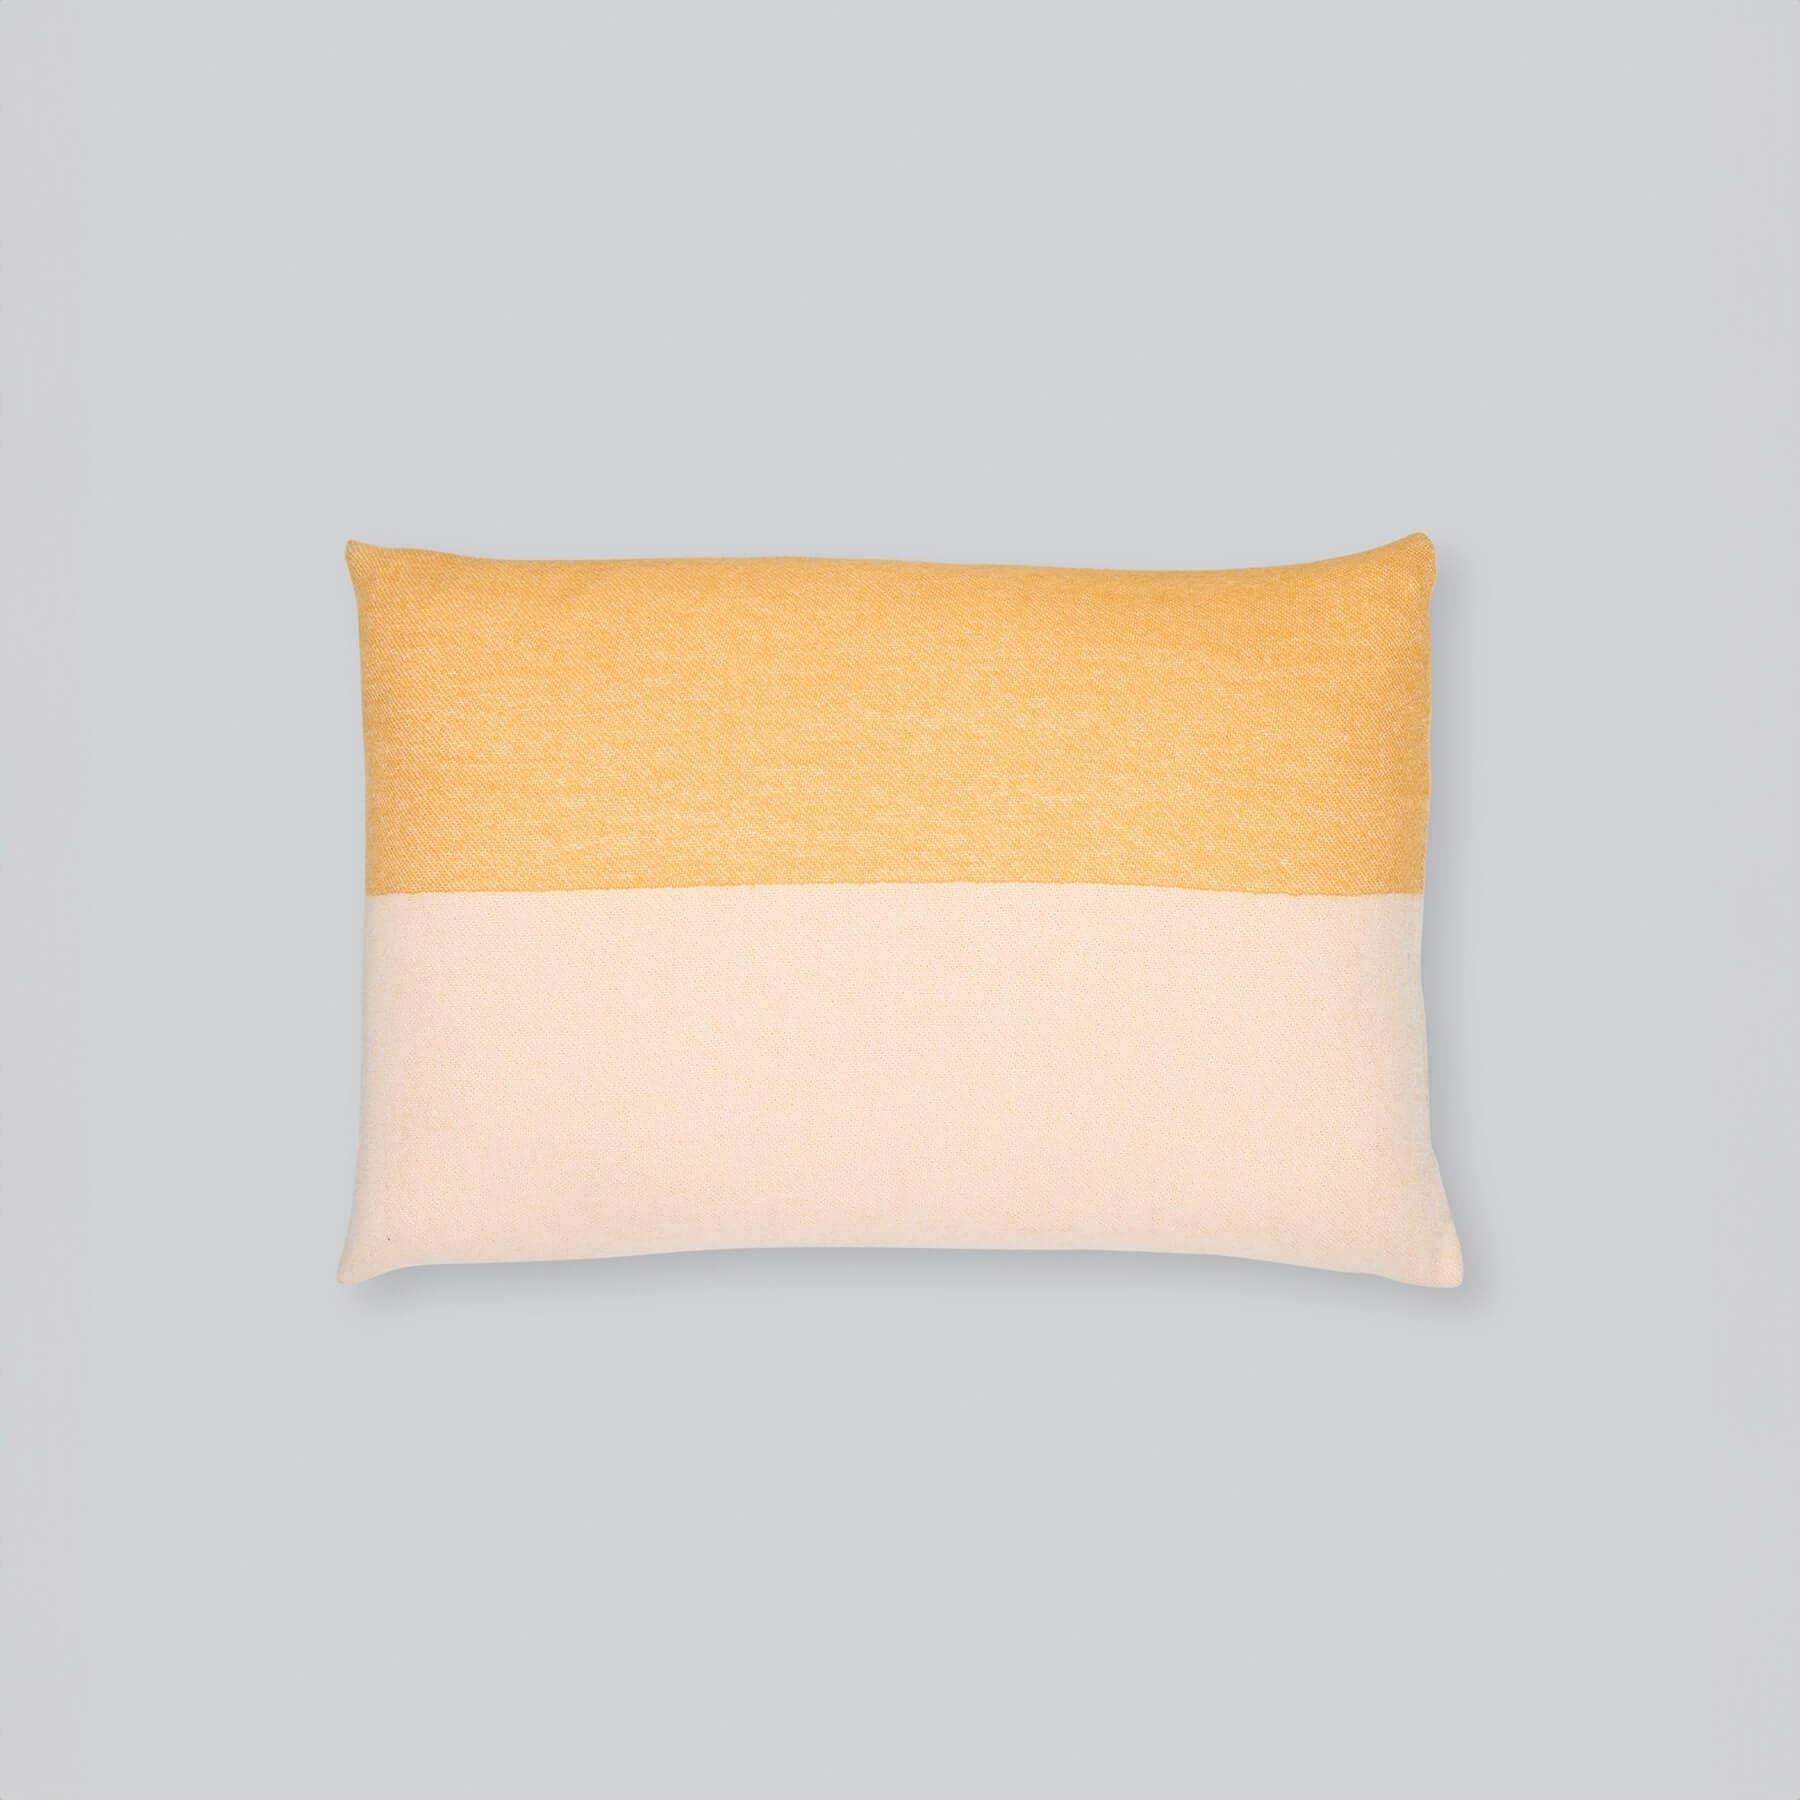 Northern Echo Cushion Cover Yellow Horizontal Merino Wool